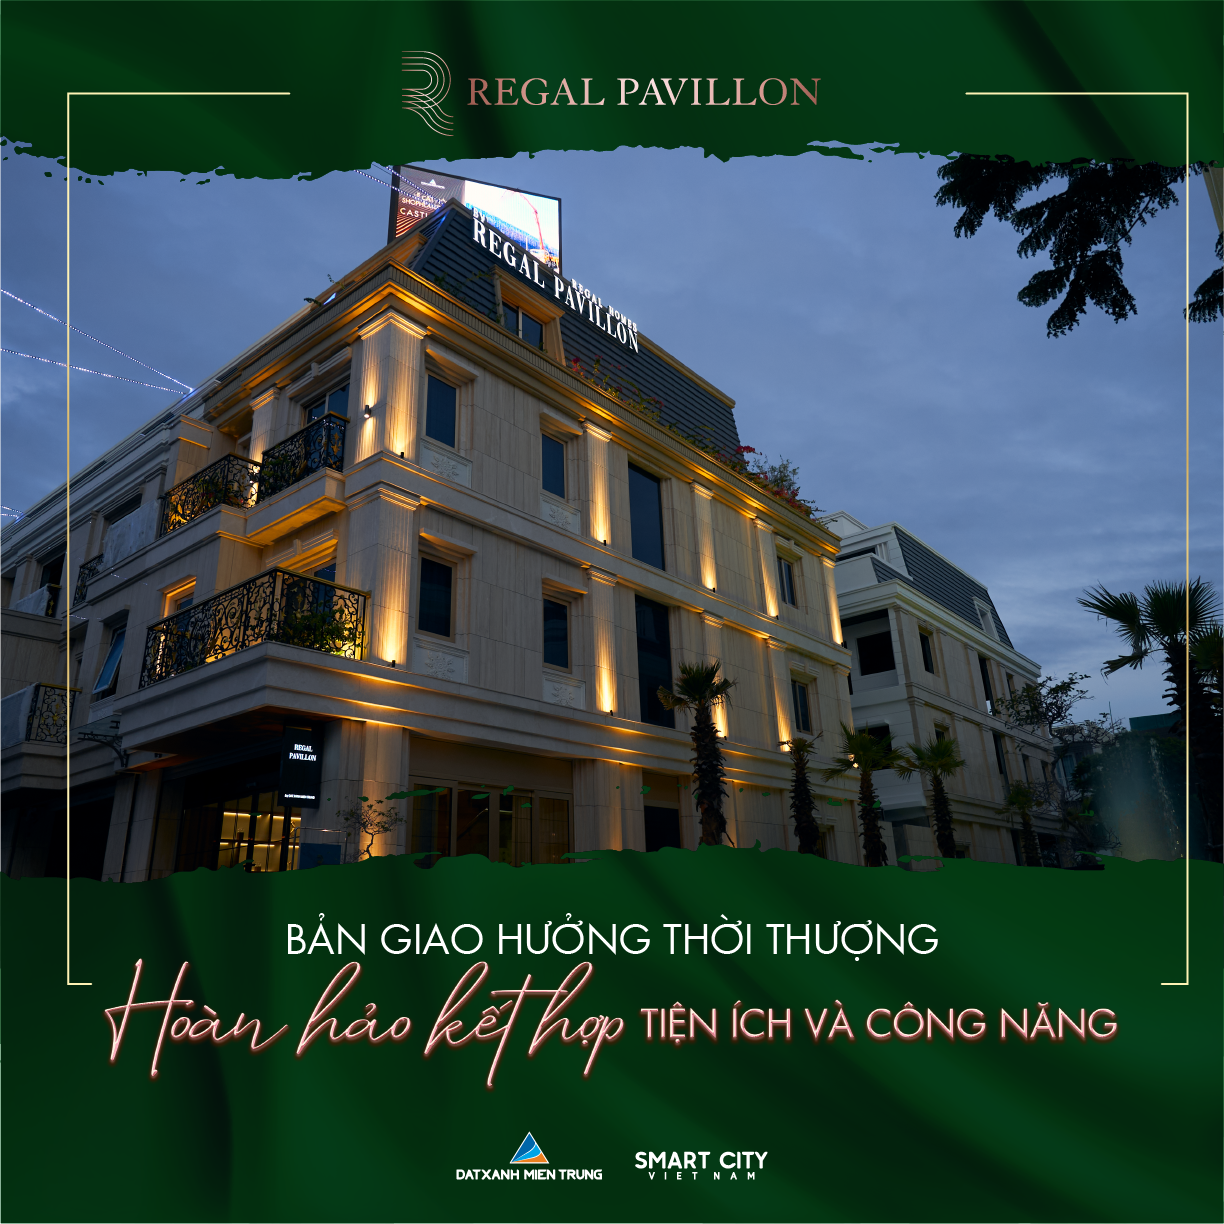 ĐẤT XANH MIỀN TRUNG TUNG GIỎ HÀNG VIP ĐẶC BIỆT REGAL PAVILLON